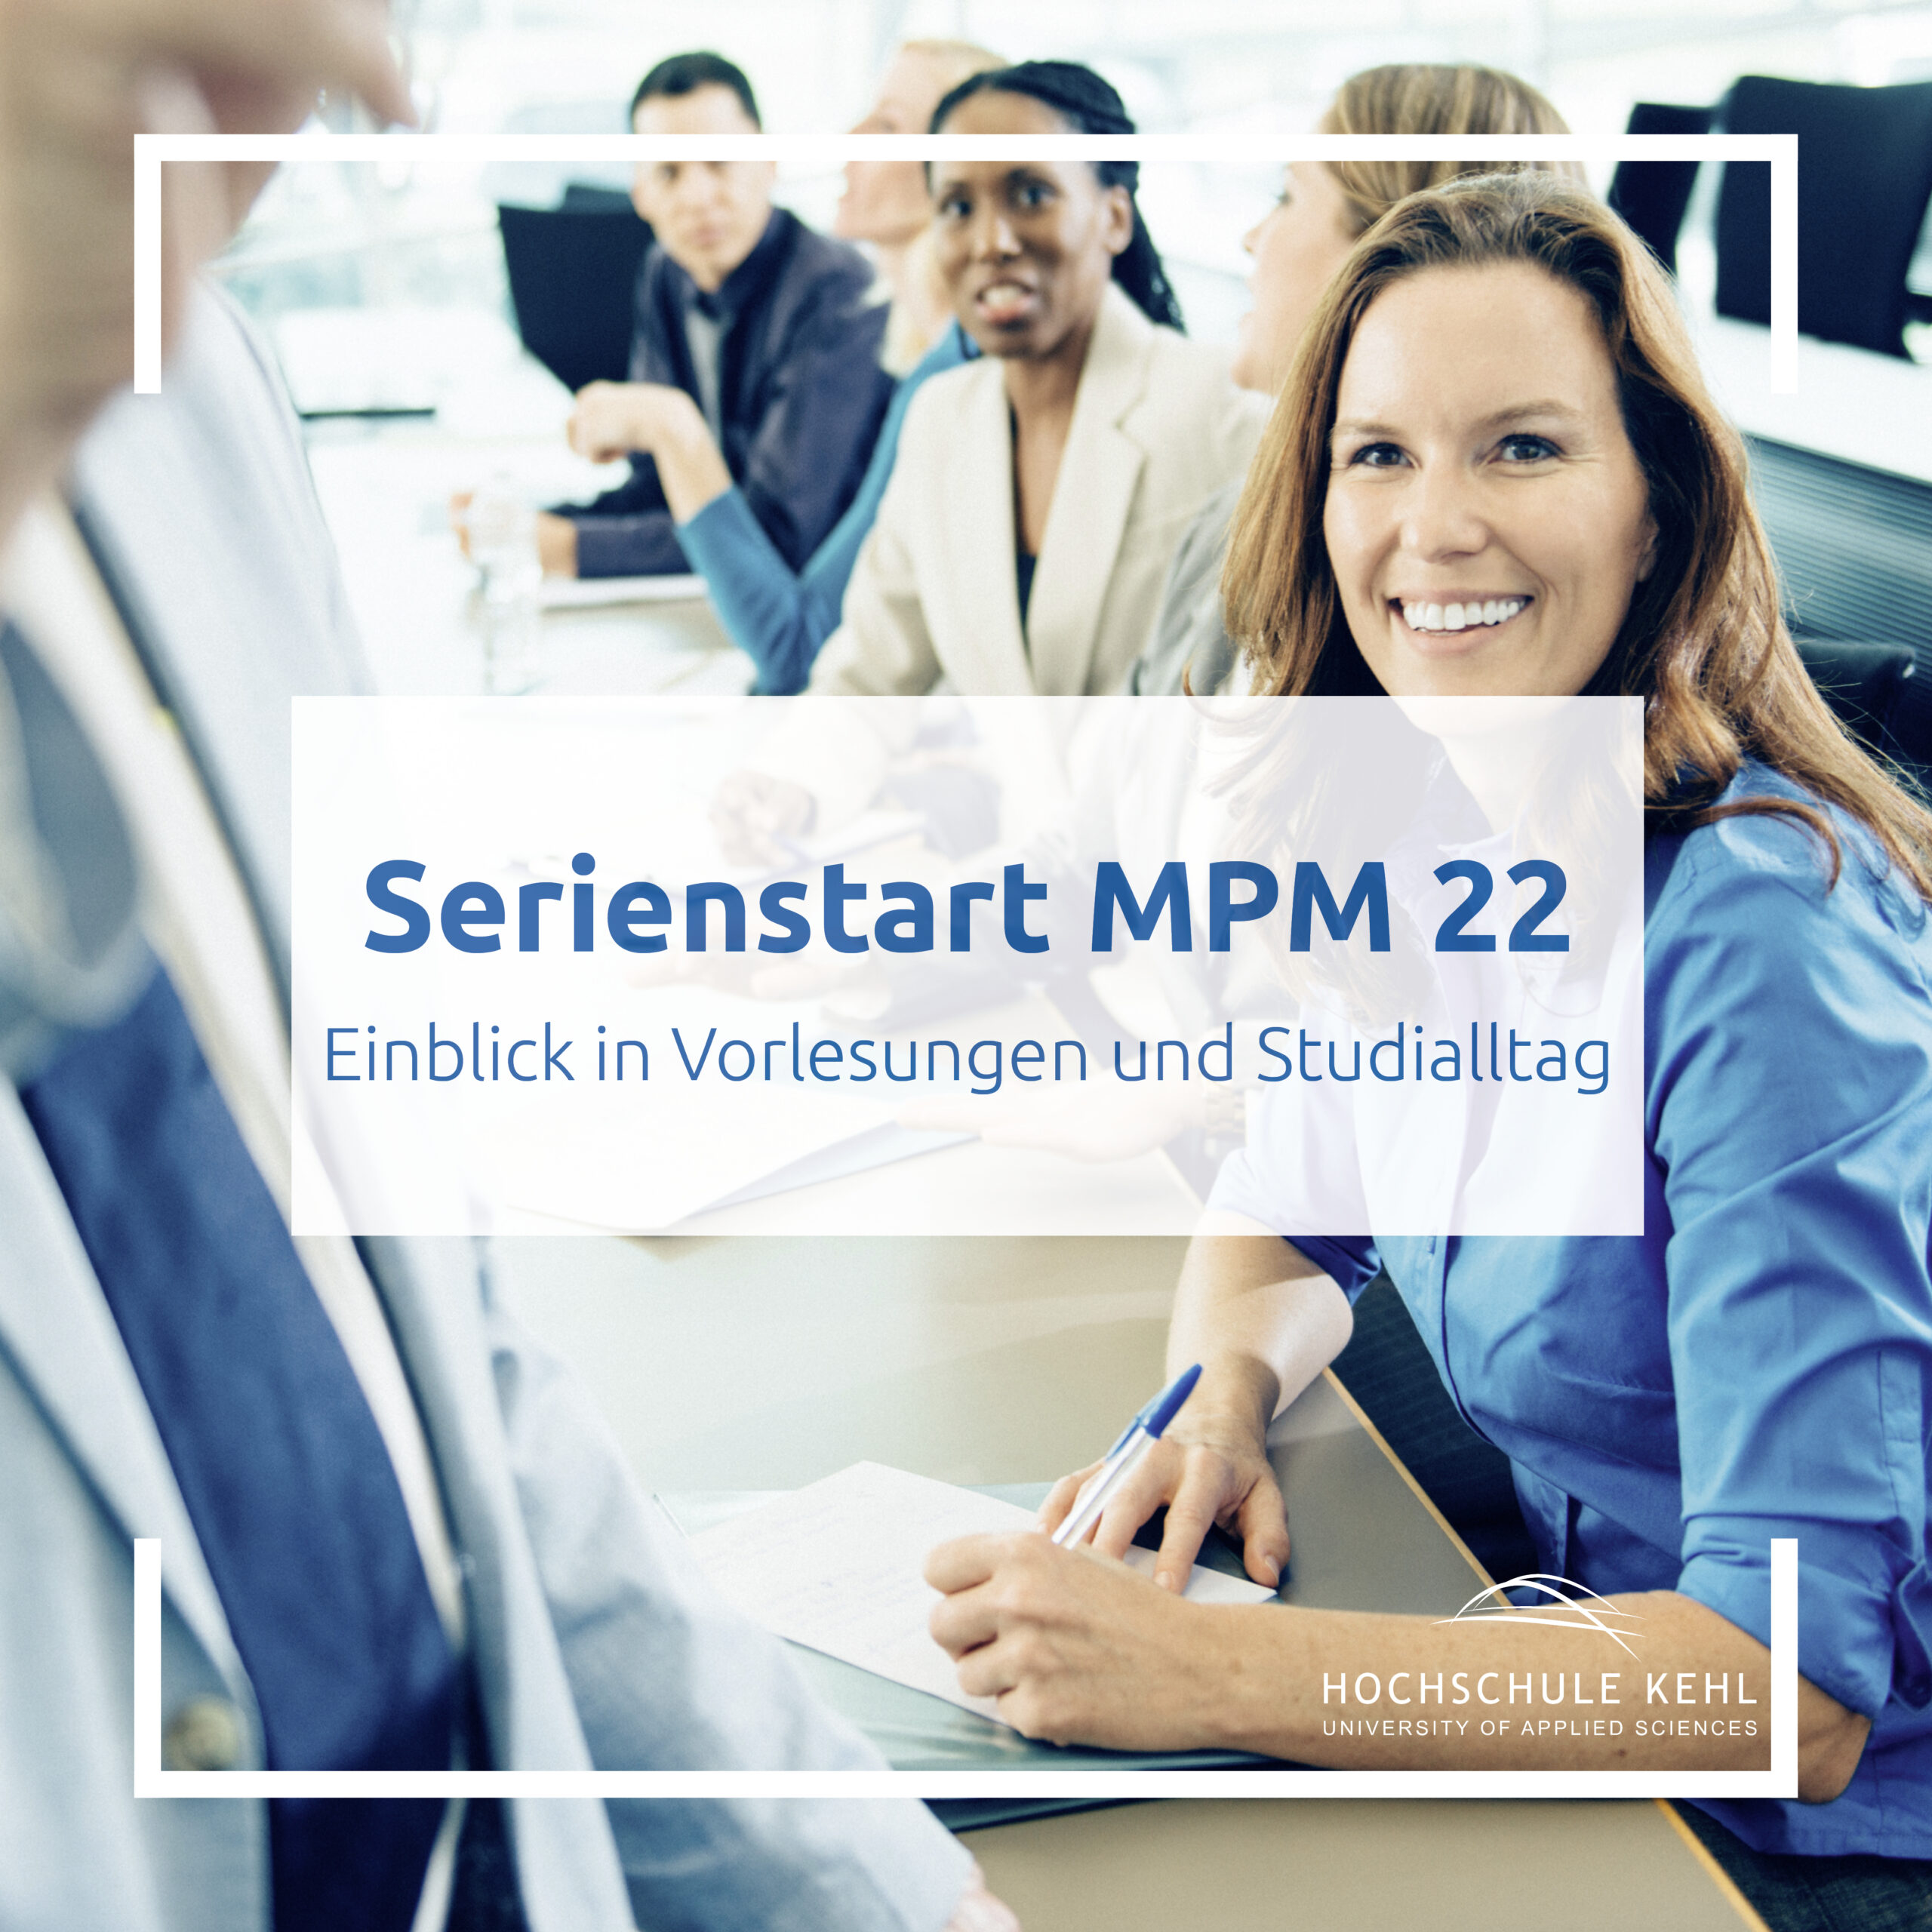 Masterstudierende, lächelnd, mit Text: Serienstart MPM 22 Einblick in Vorlesungen und Studialltag